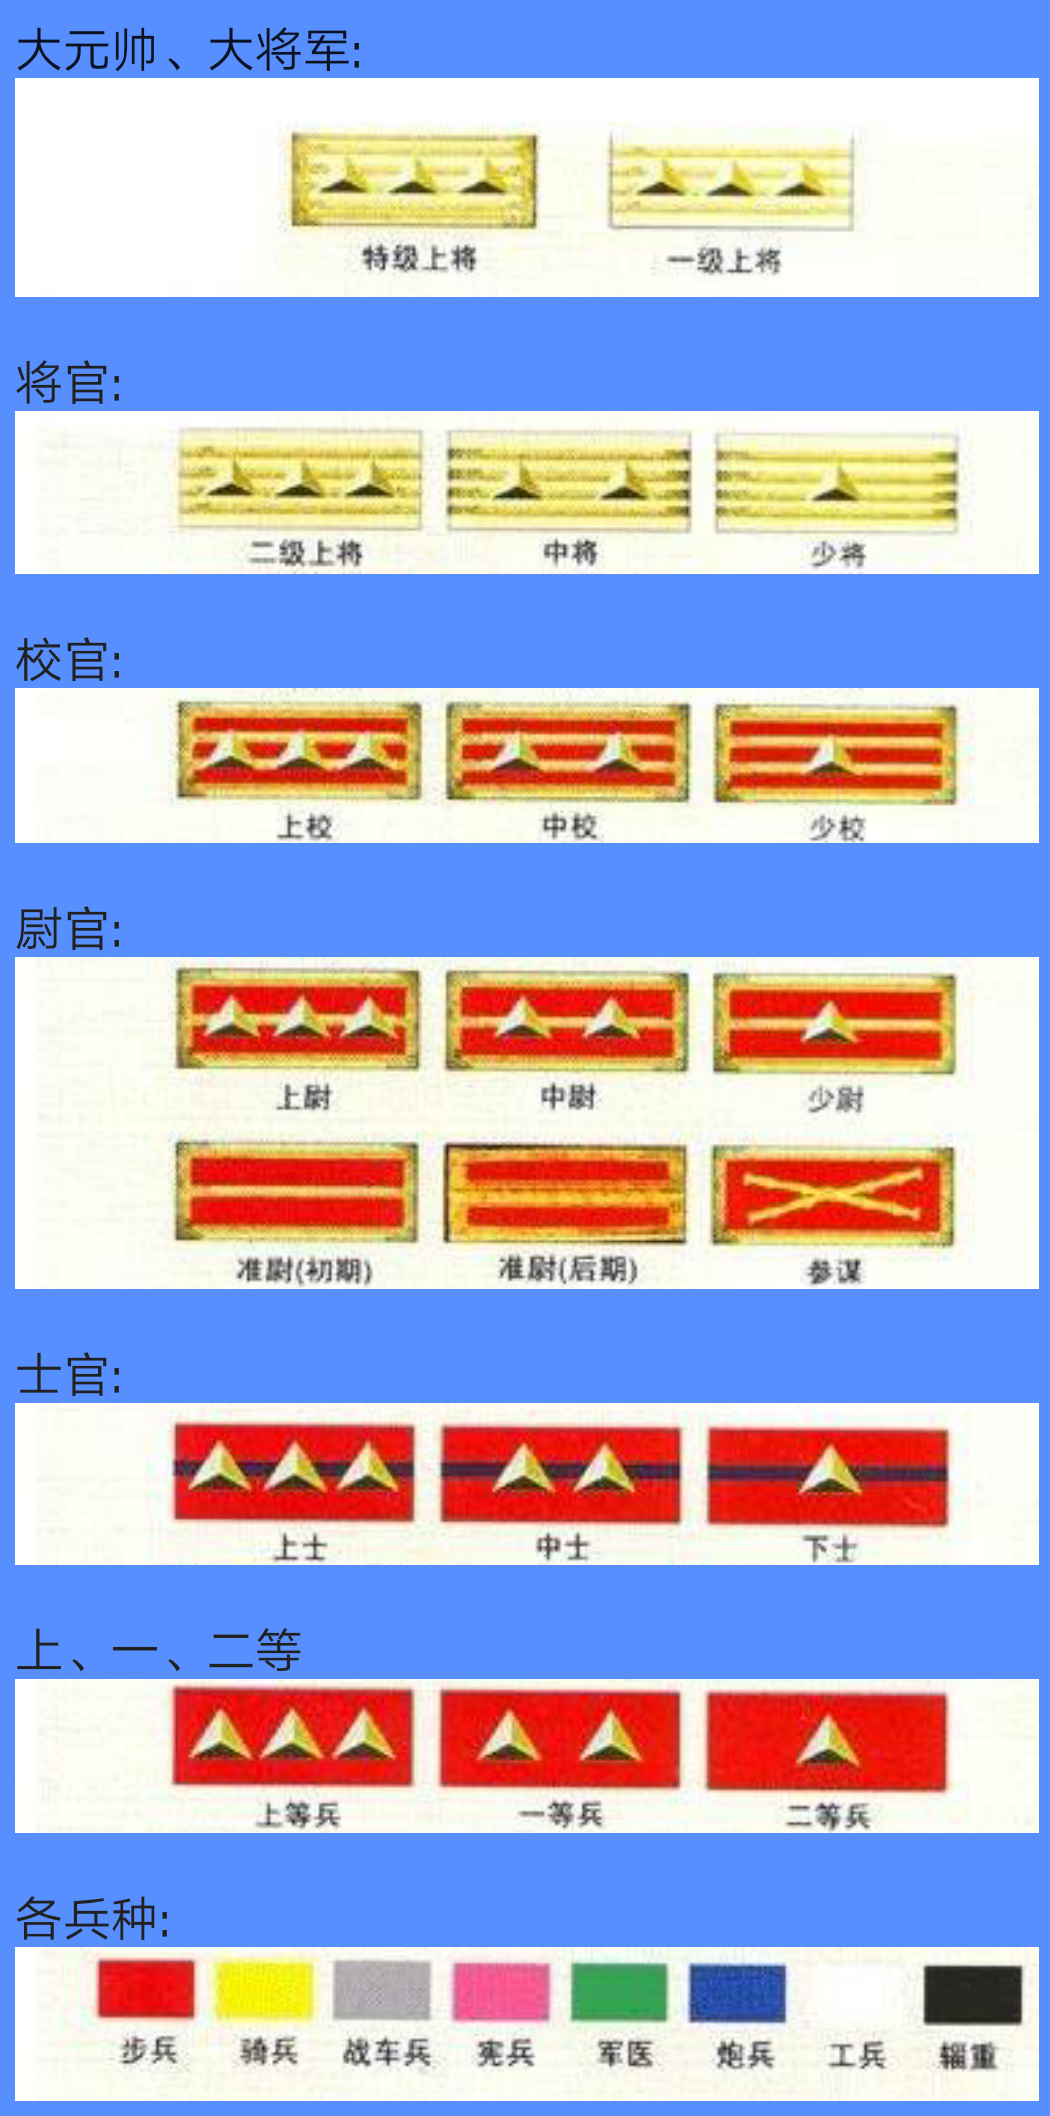 中华民国国军军衔制度源起于清末的新军,北洋六镇时模仿普鲁士军制